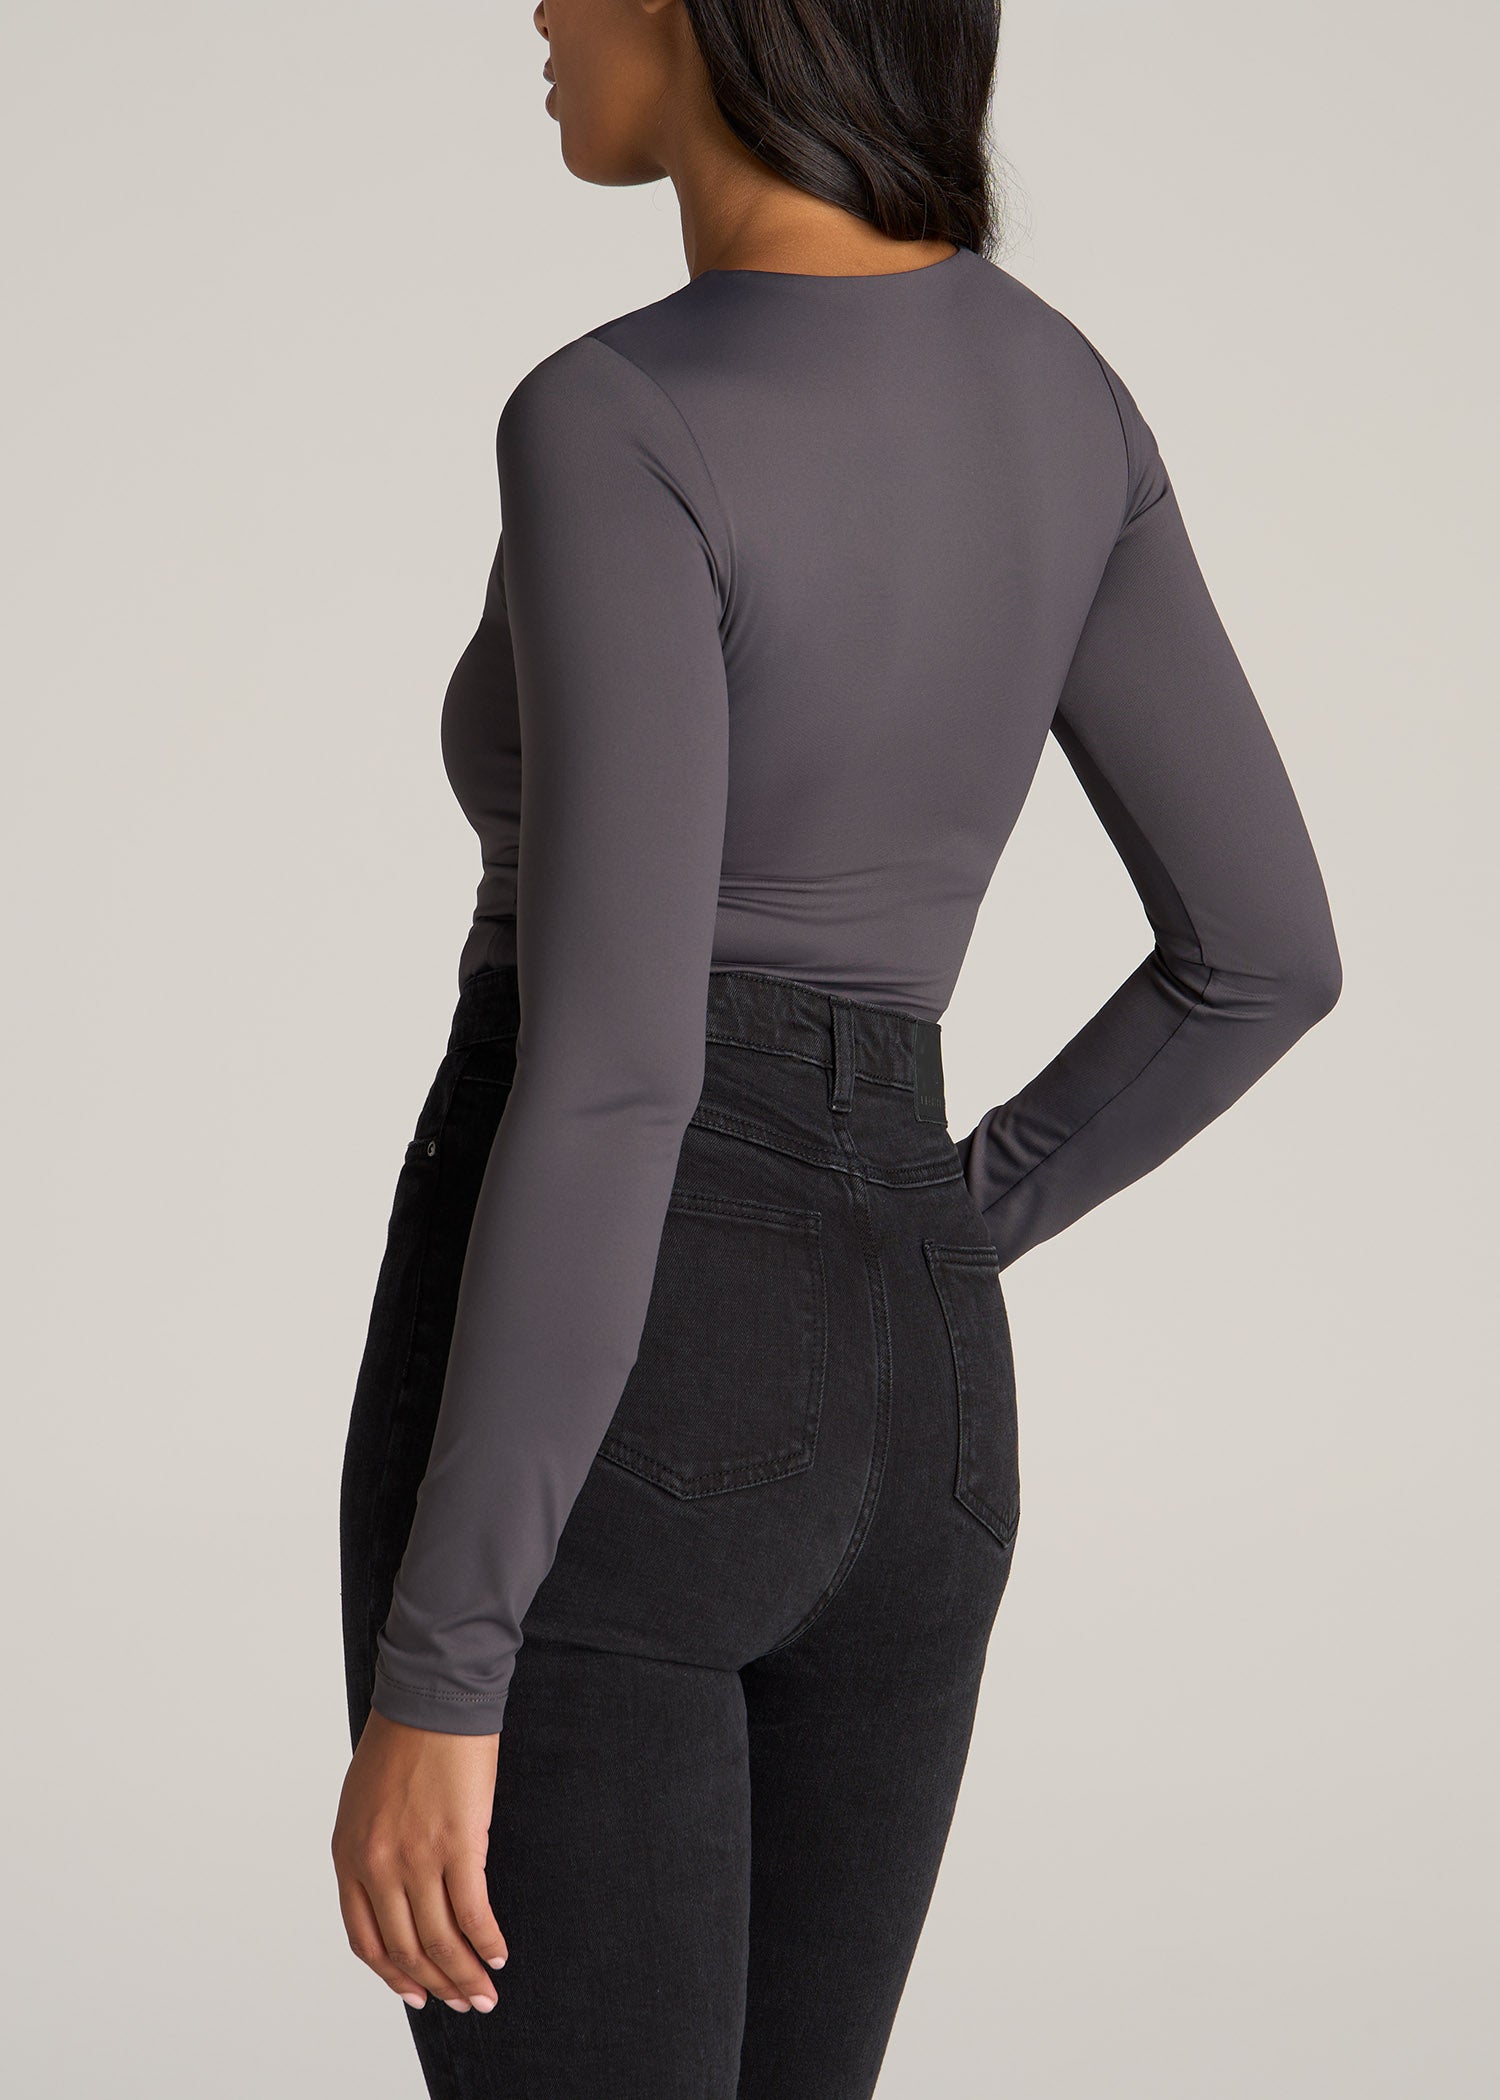 Long Sleeve Bodysuit for Tall Women